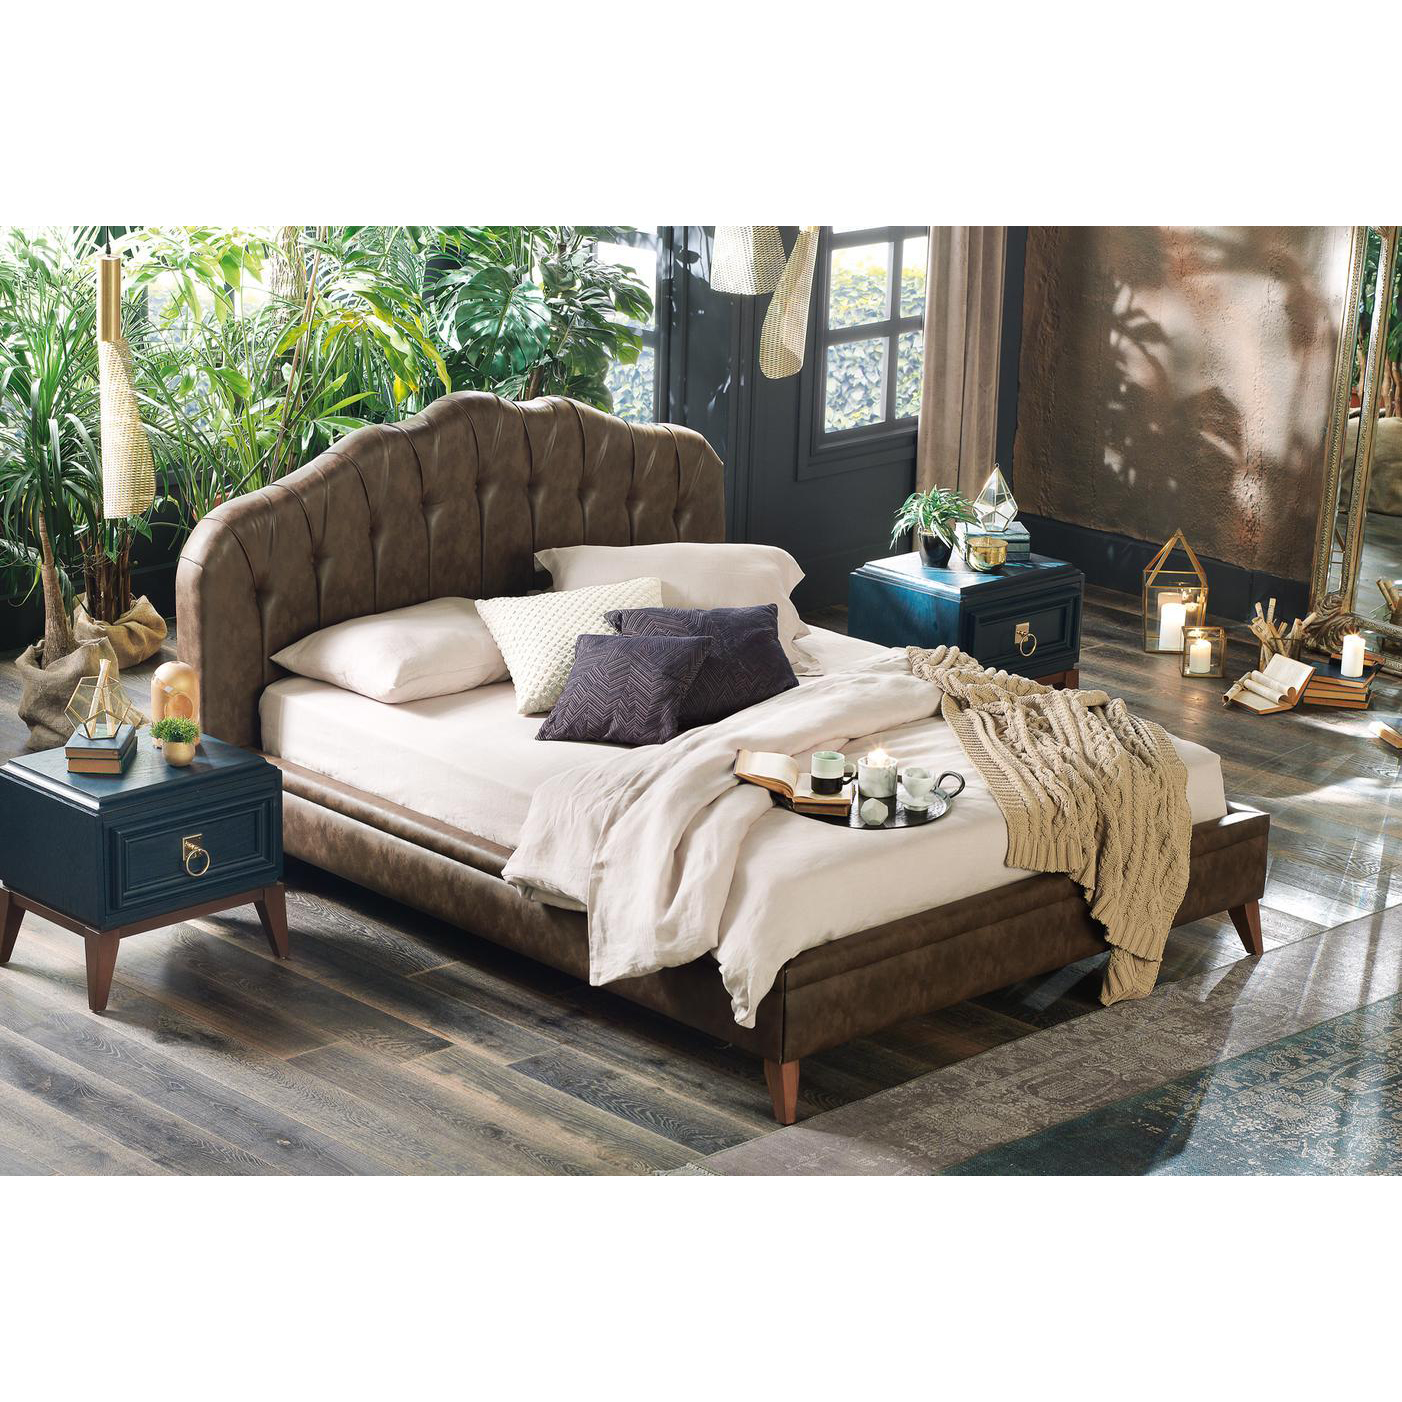 Кровать Enza Home Elegante,180х200, с подъёмным механизмом, цвет коричневый 308 (EH59508)EH59508